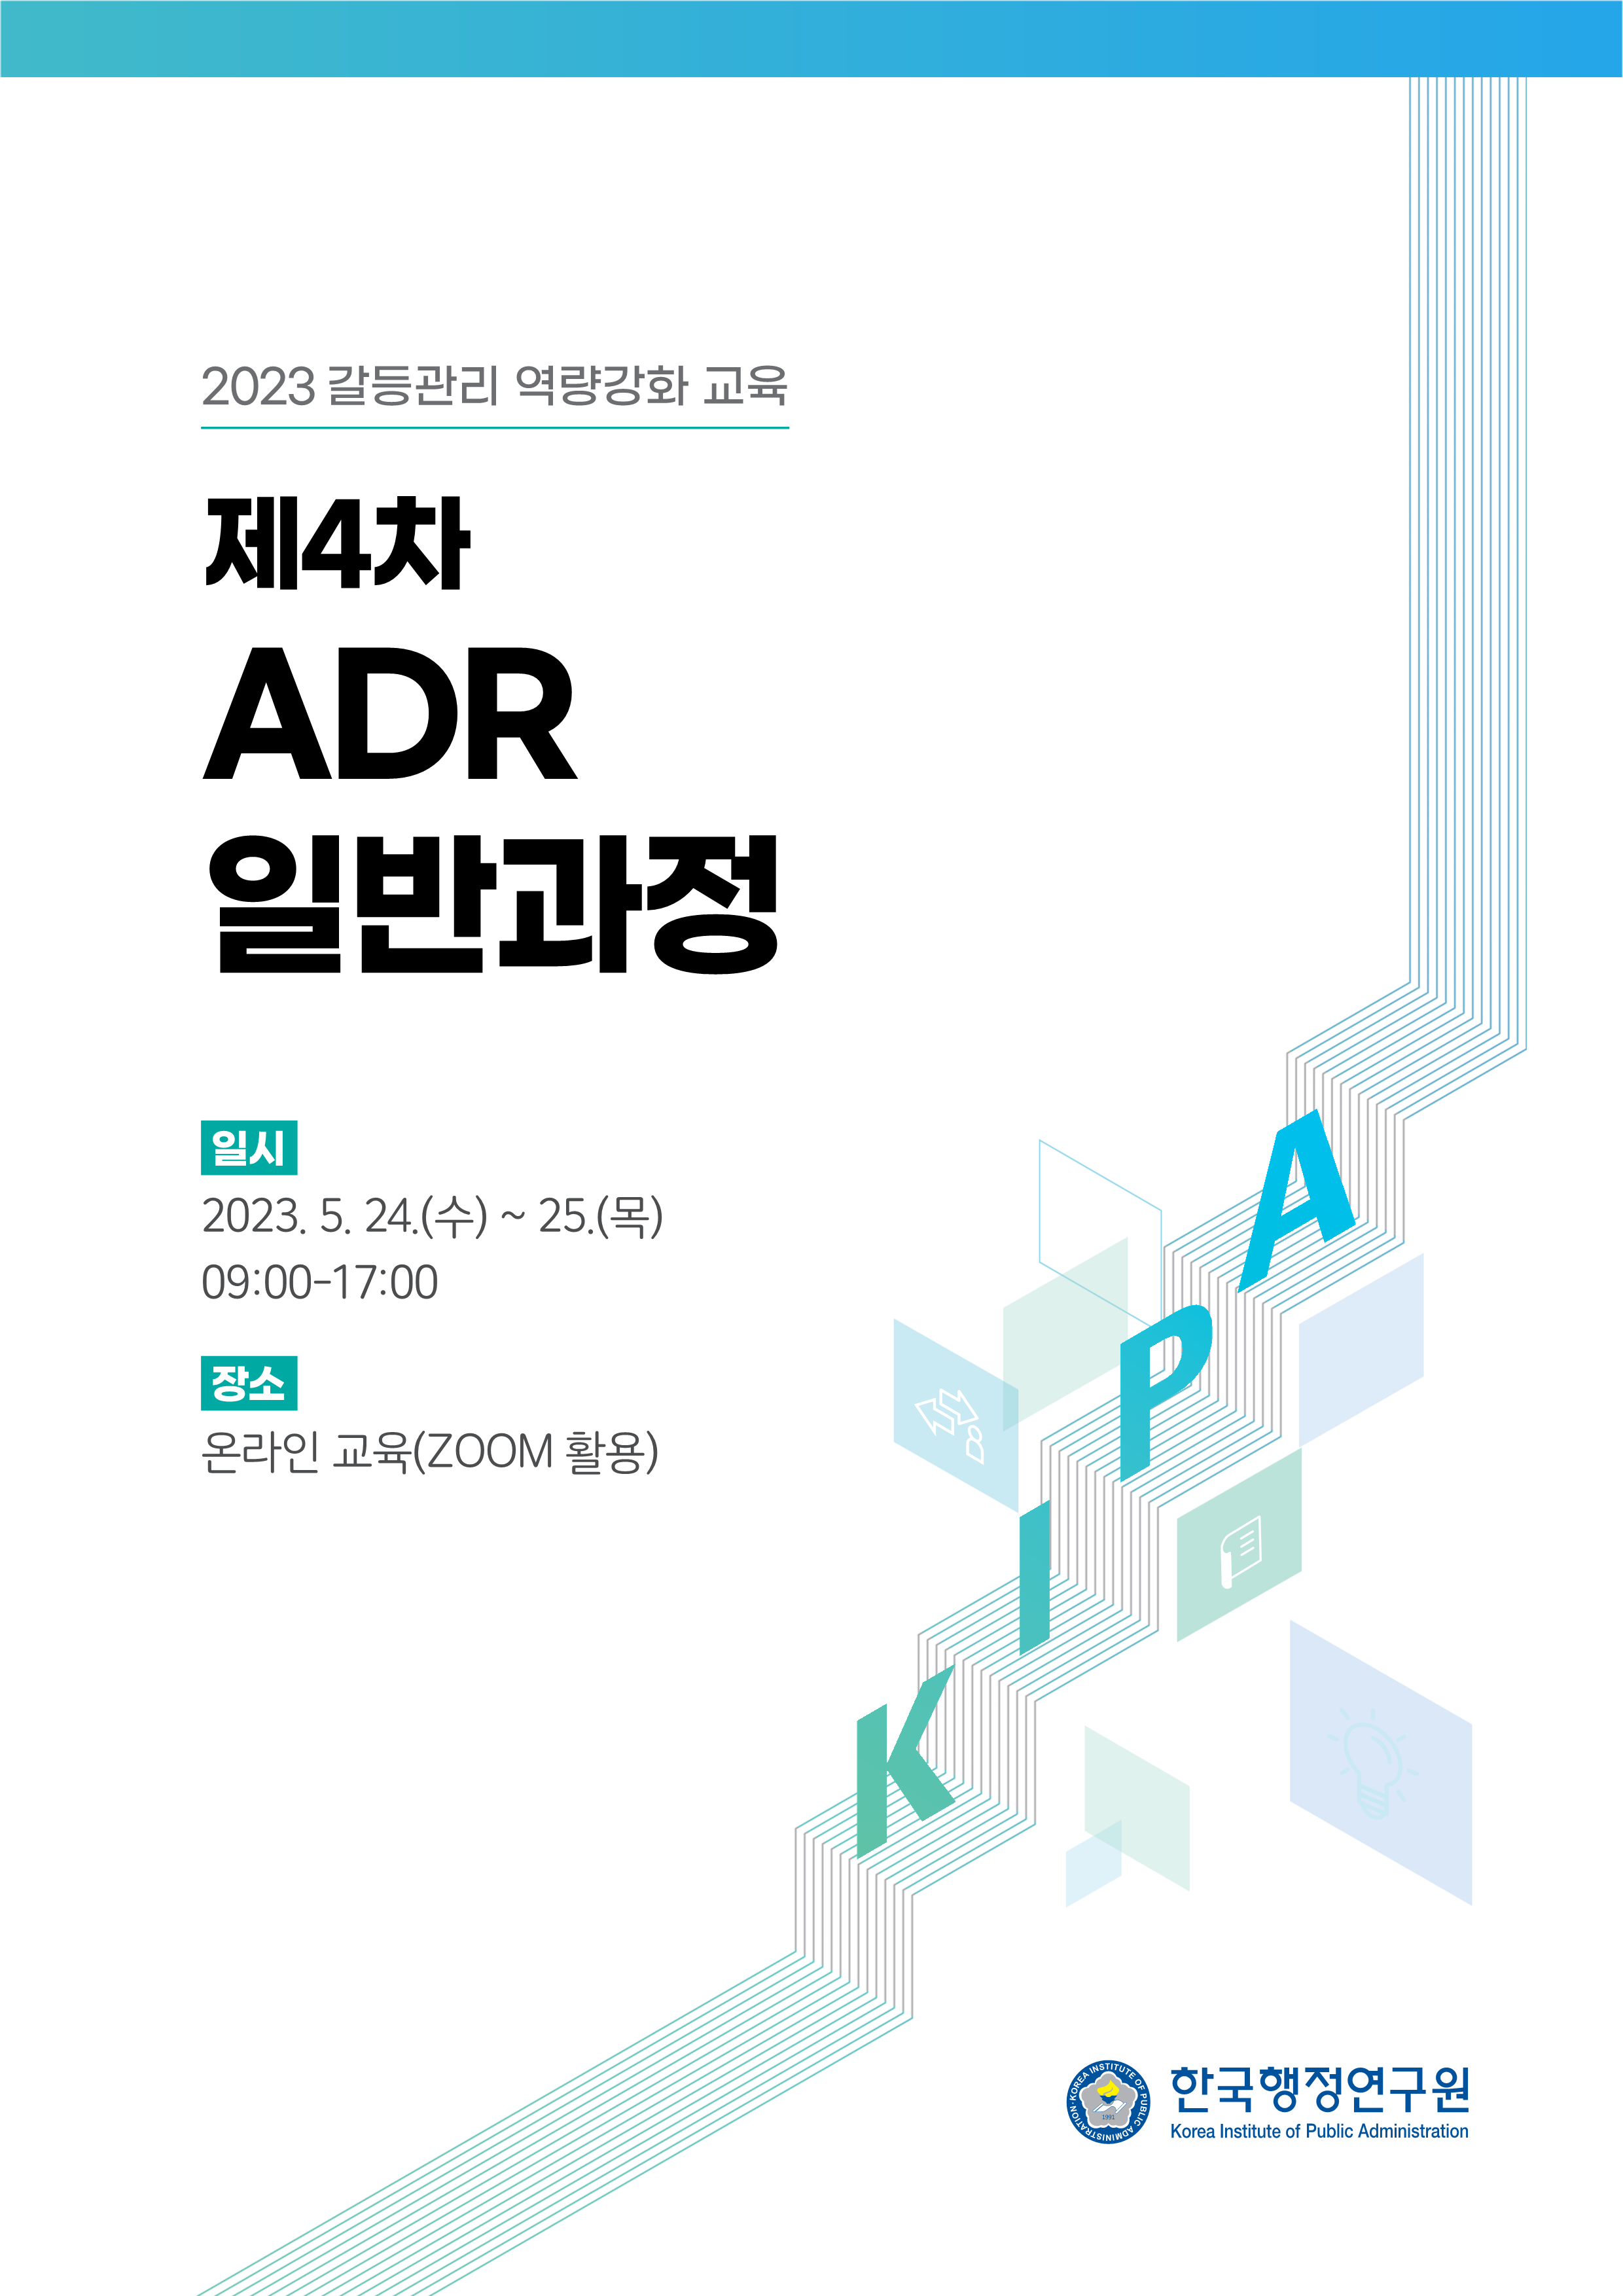 한국행정연구원 2023 제4차 ADR 일반과정 개최